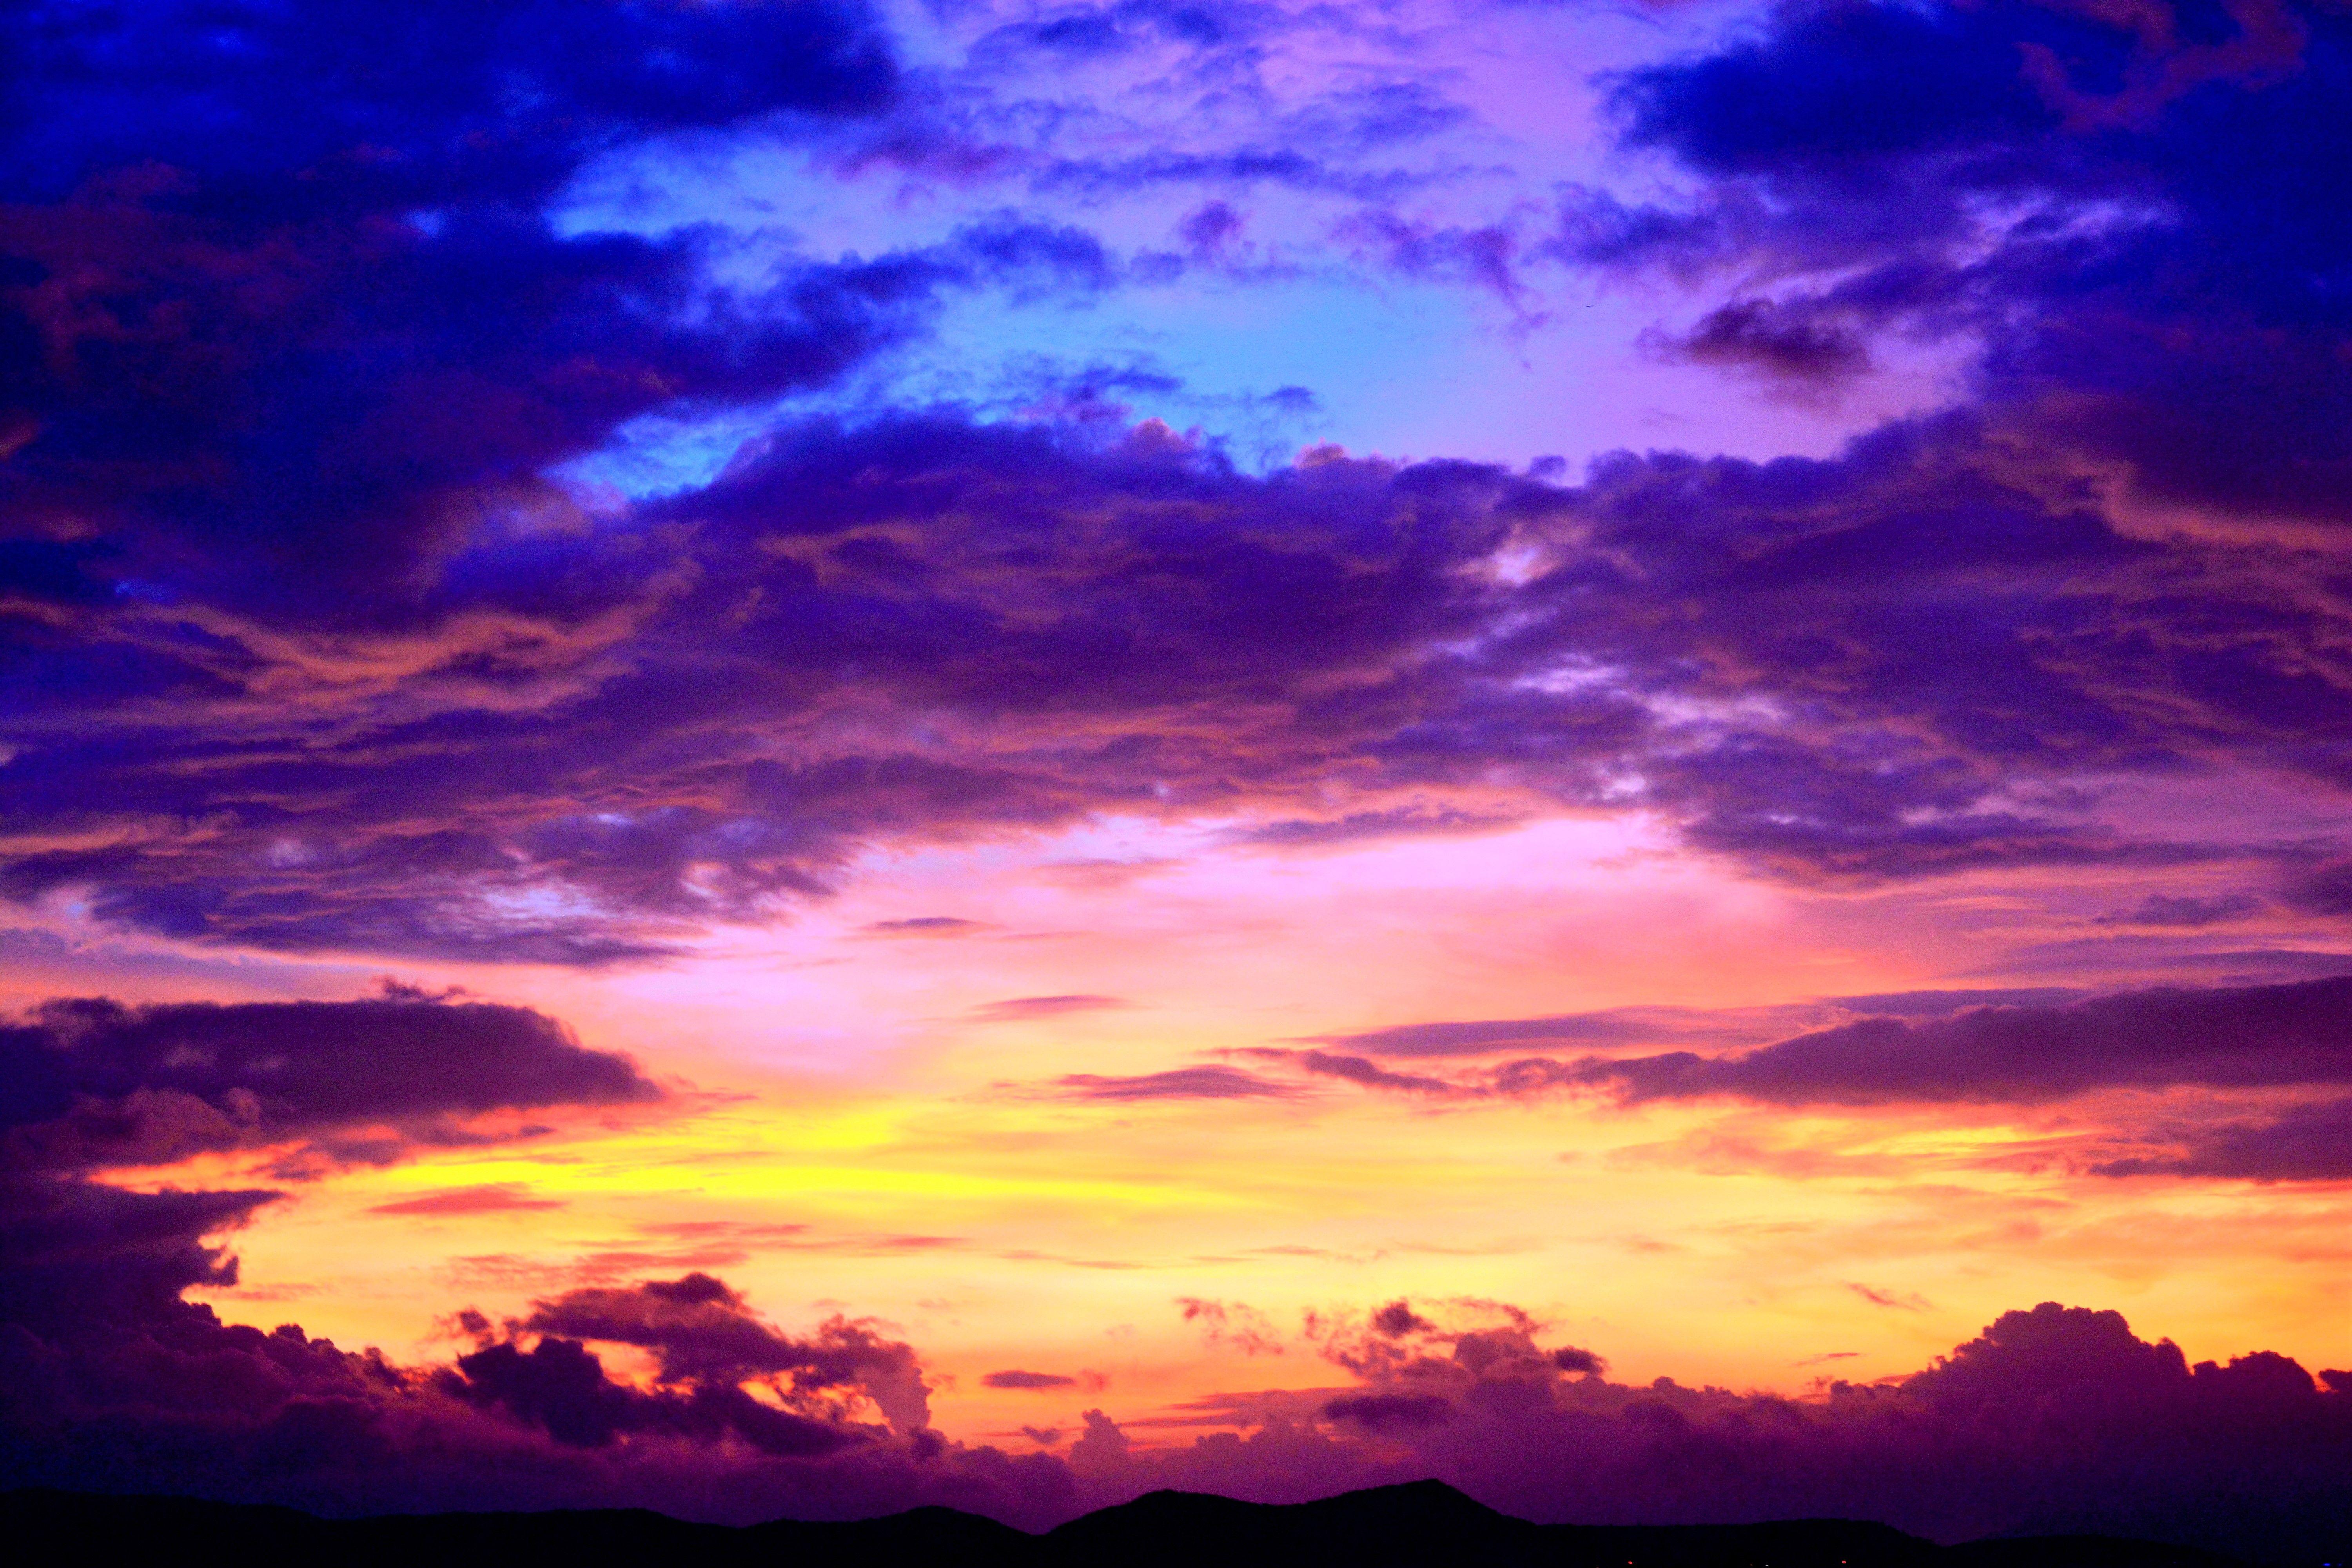 Purple Cloudy Sunset 5k Retina Ultra HD Wallpaper. Background Image